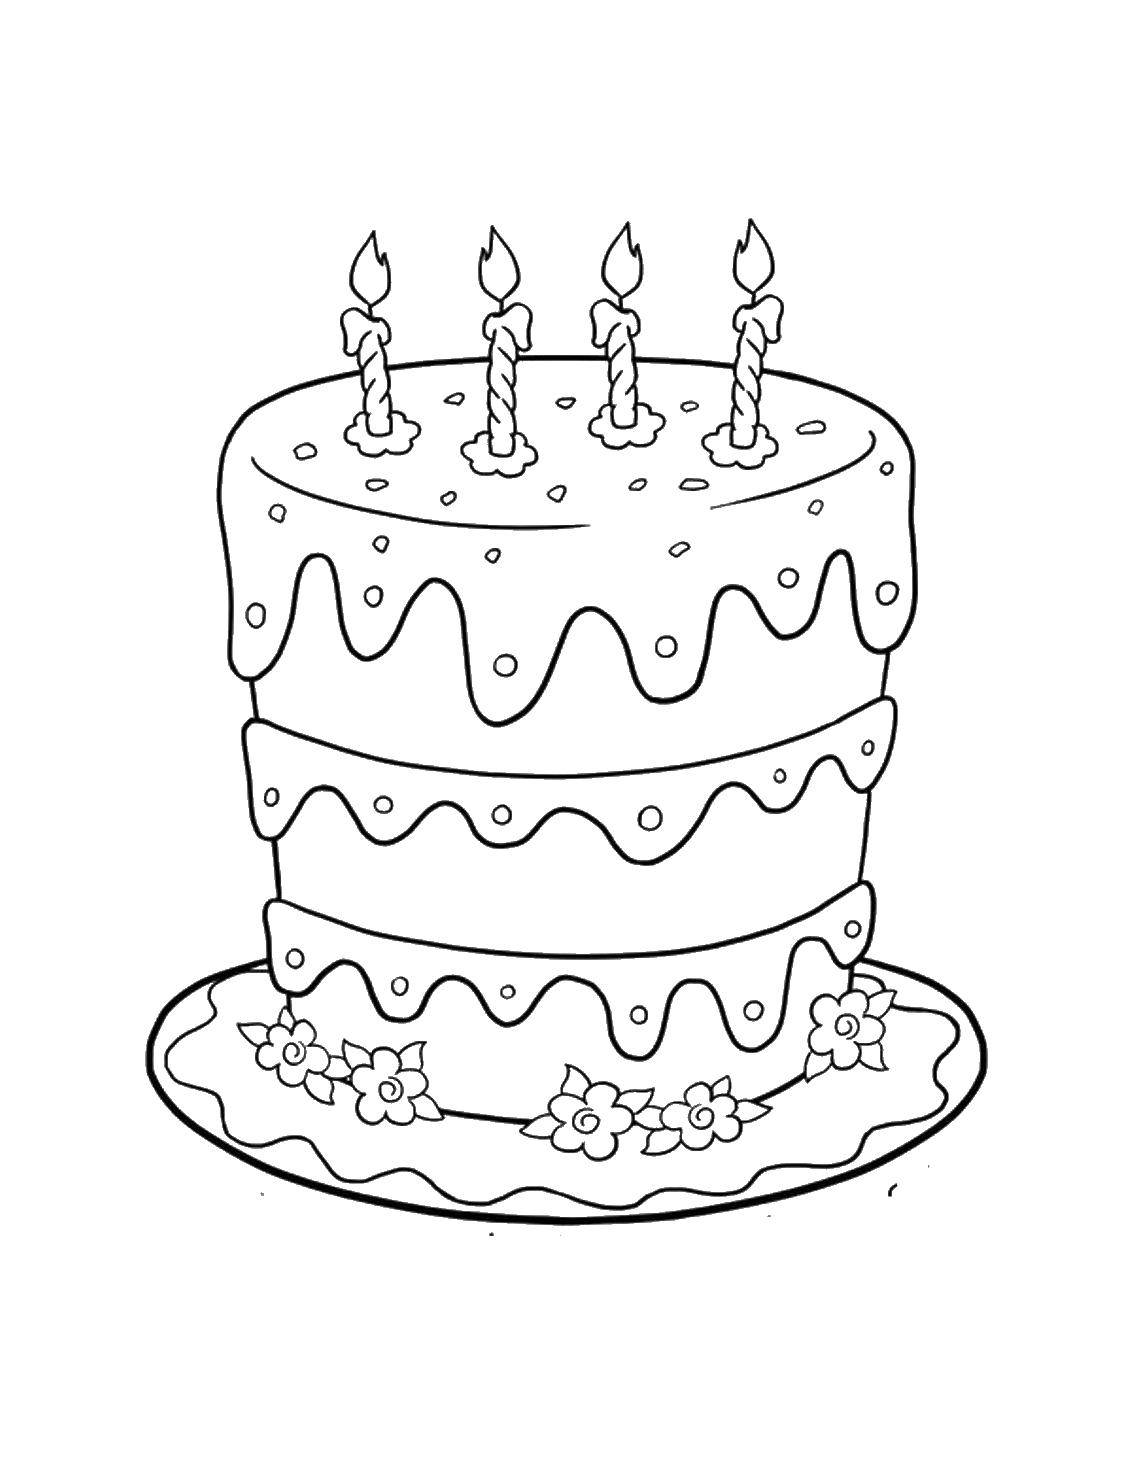 Название: Раскраска Высокий торт со свечками. Категория: торты. Теги: Торт, еда, праздник.